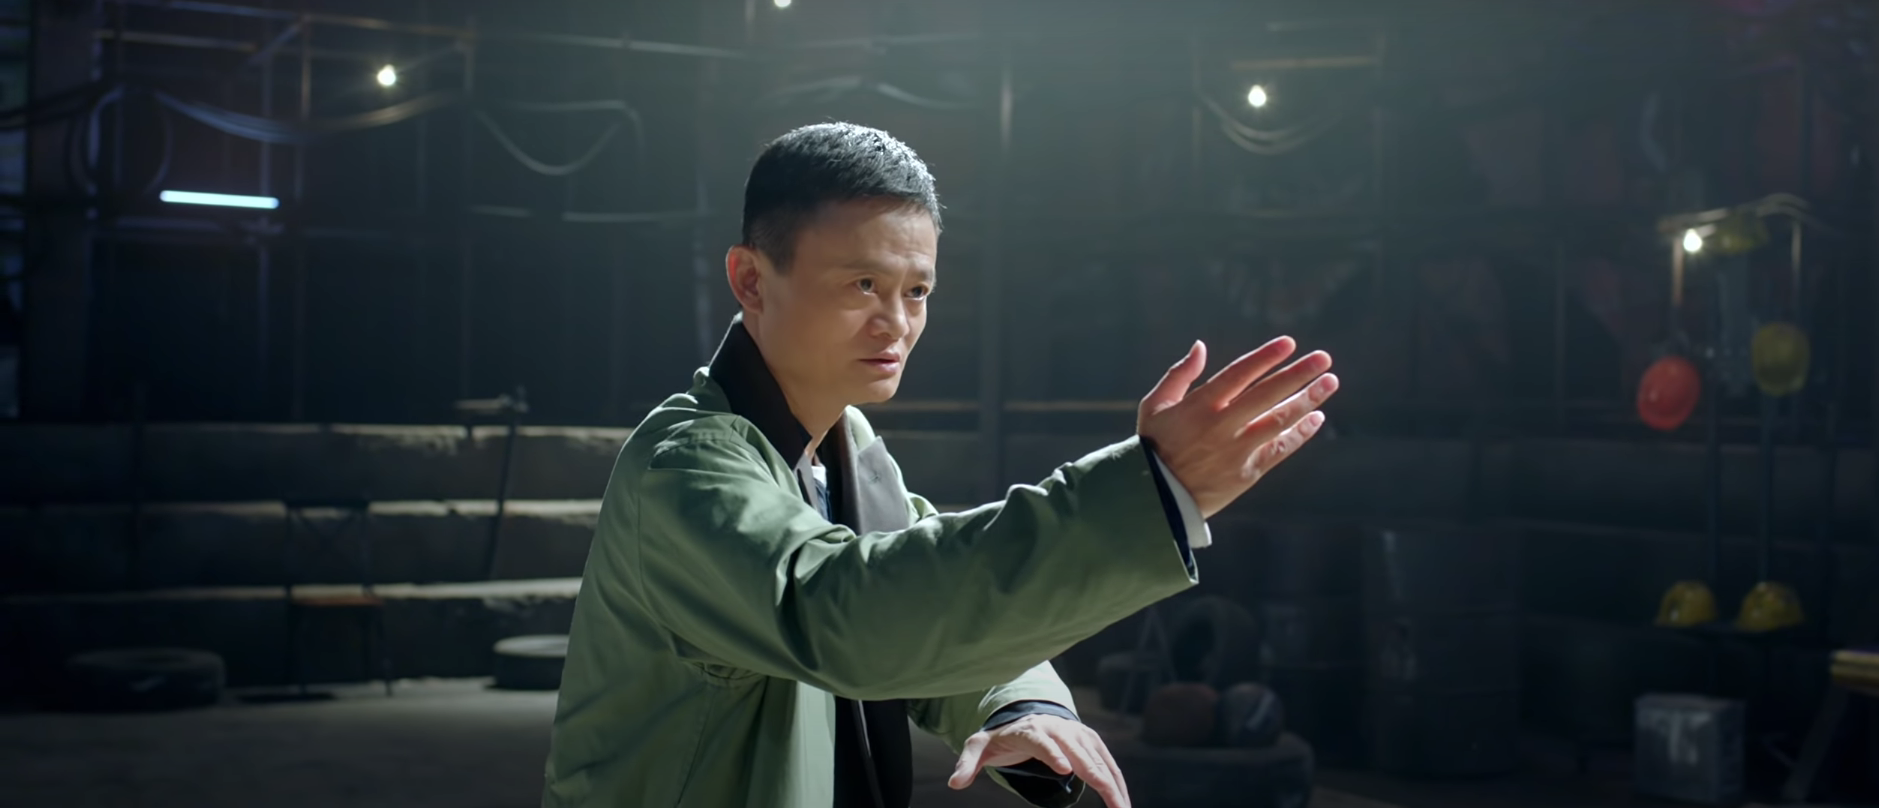 Tỉ phú Jack Ma trong phim “Công thủ đạo”. Ảnh nguồn: Xinhua.